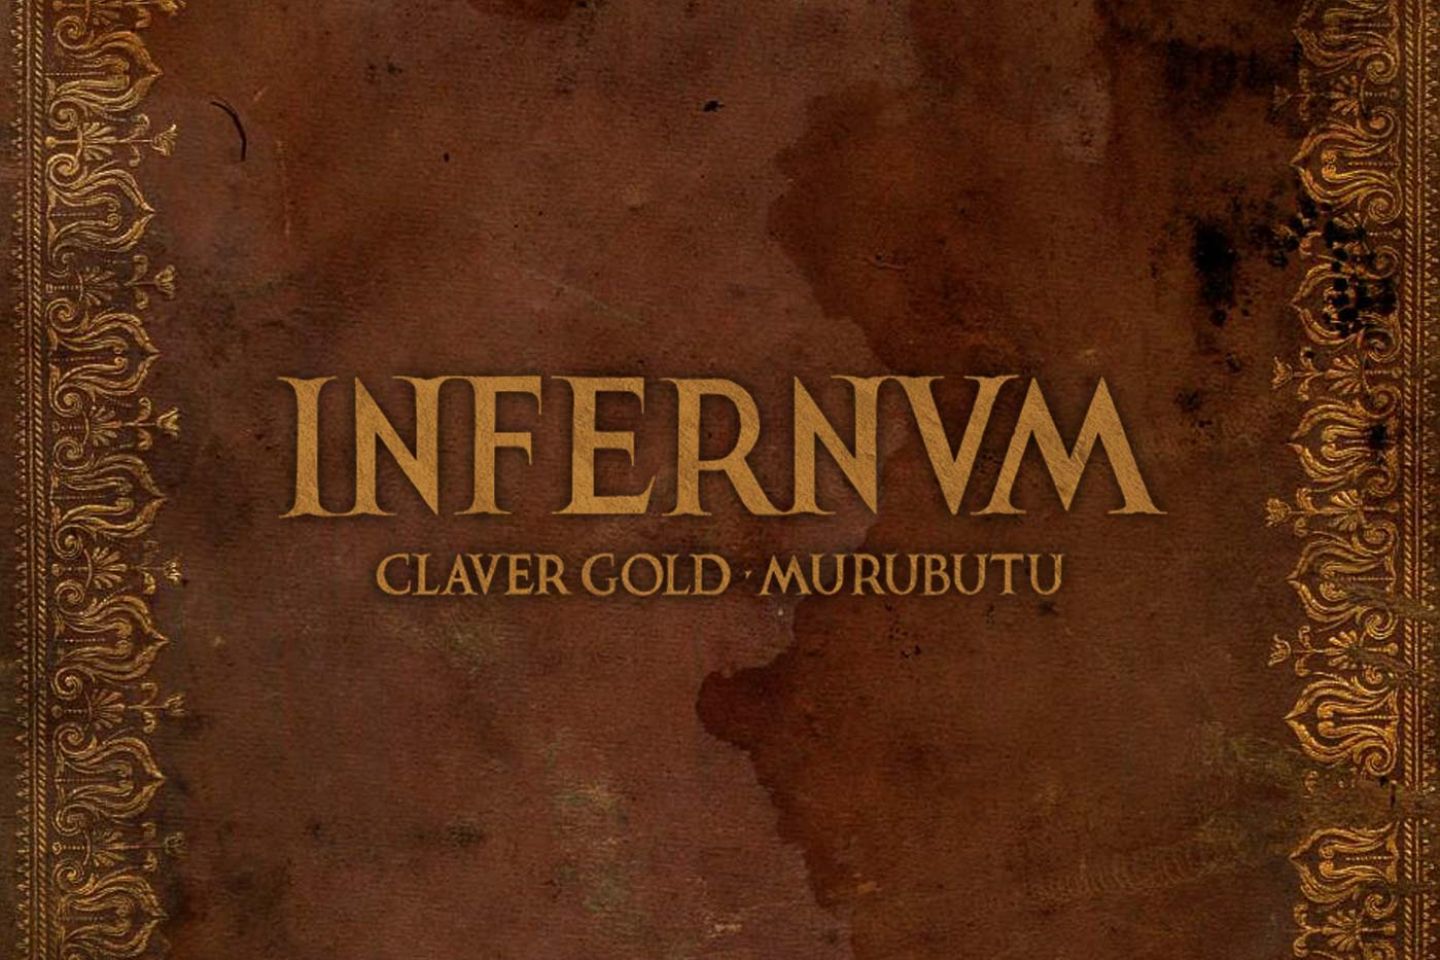 Claver Gold & Murubutu “Infernvm” (Glory Hole Records, 2020)